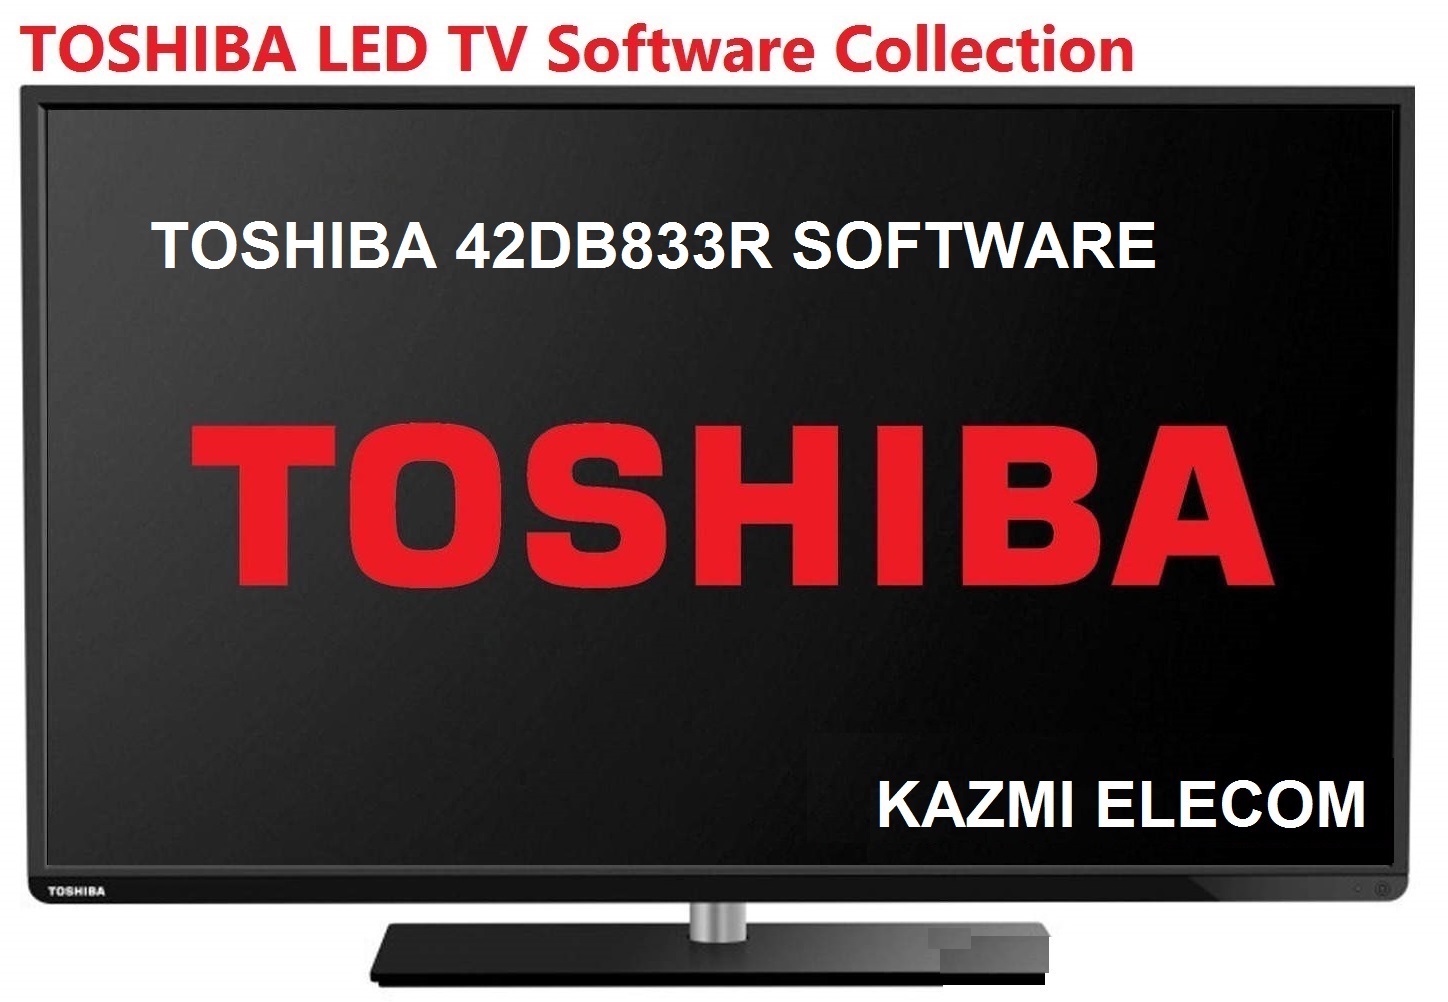 Toshiba 42Db833R